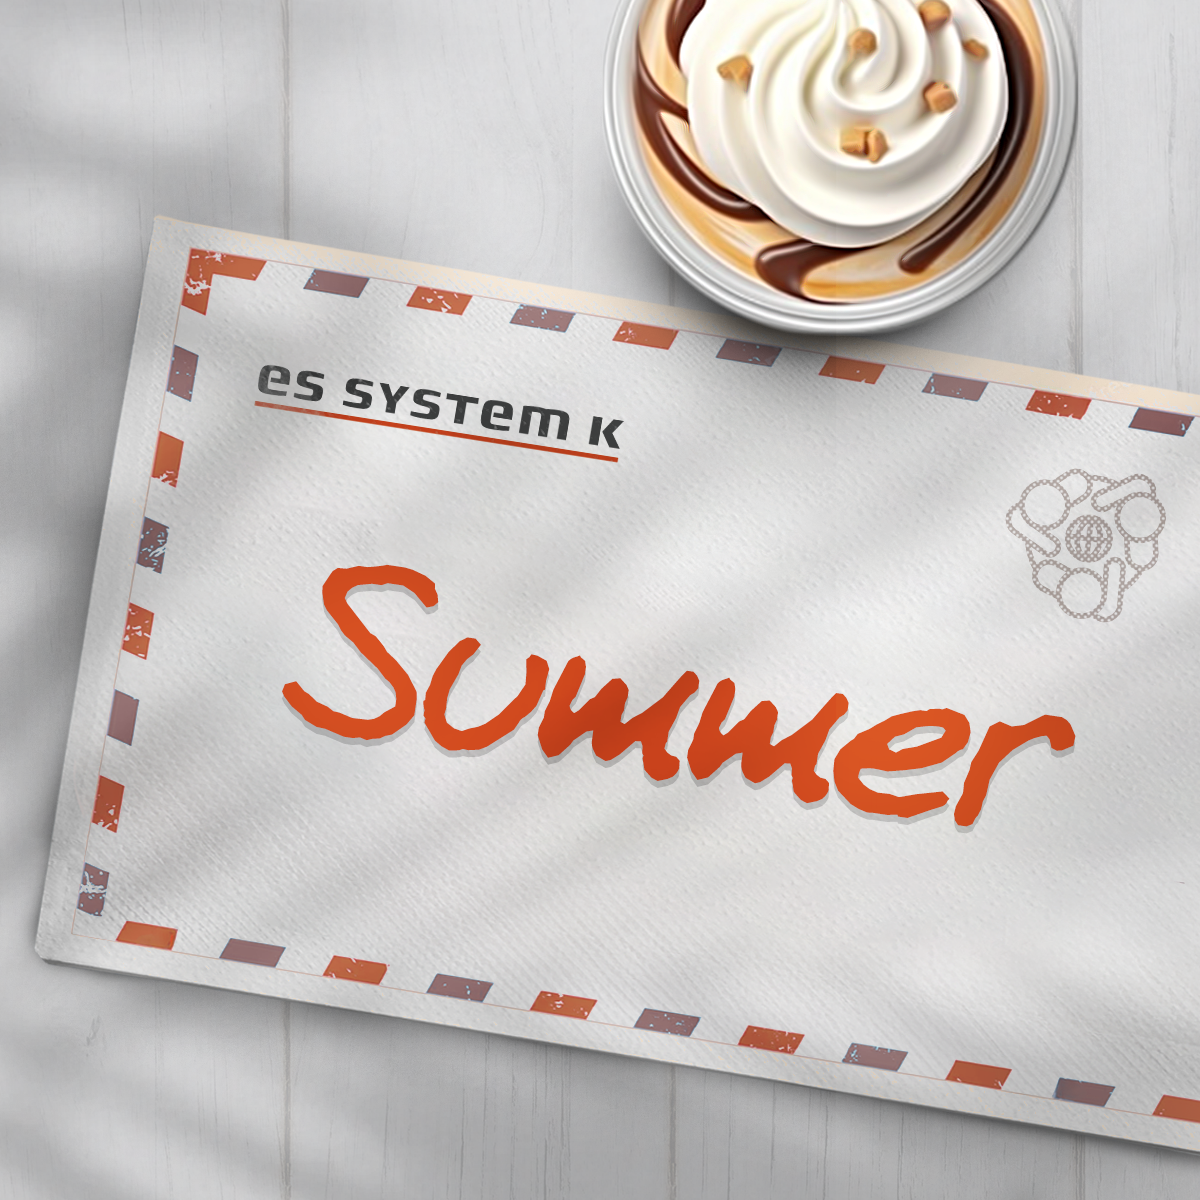 Summer Outlet w ES SYSTEM K!